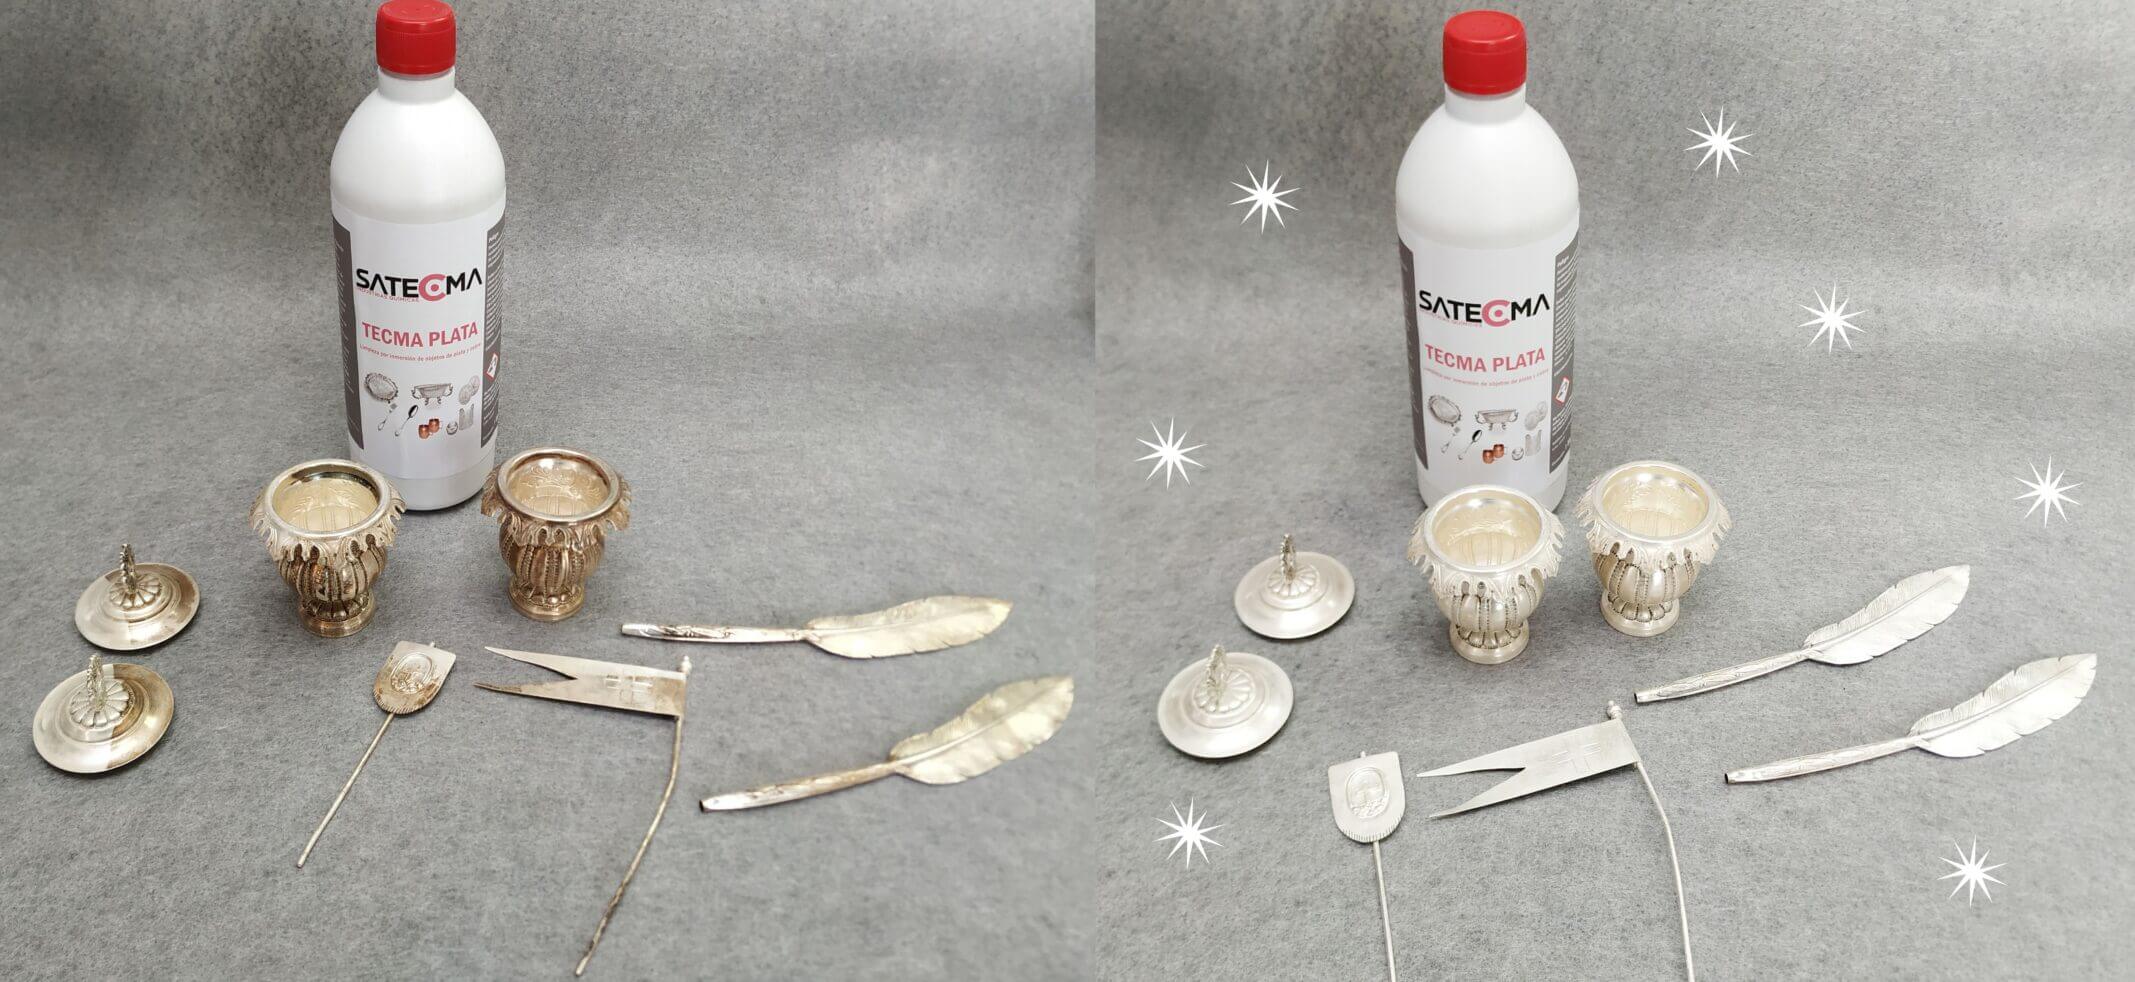 objetos antes y despues de la limpieza con tecma plata